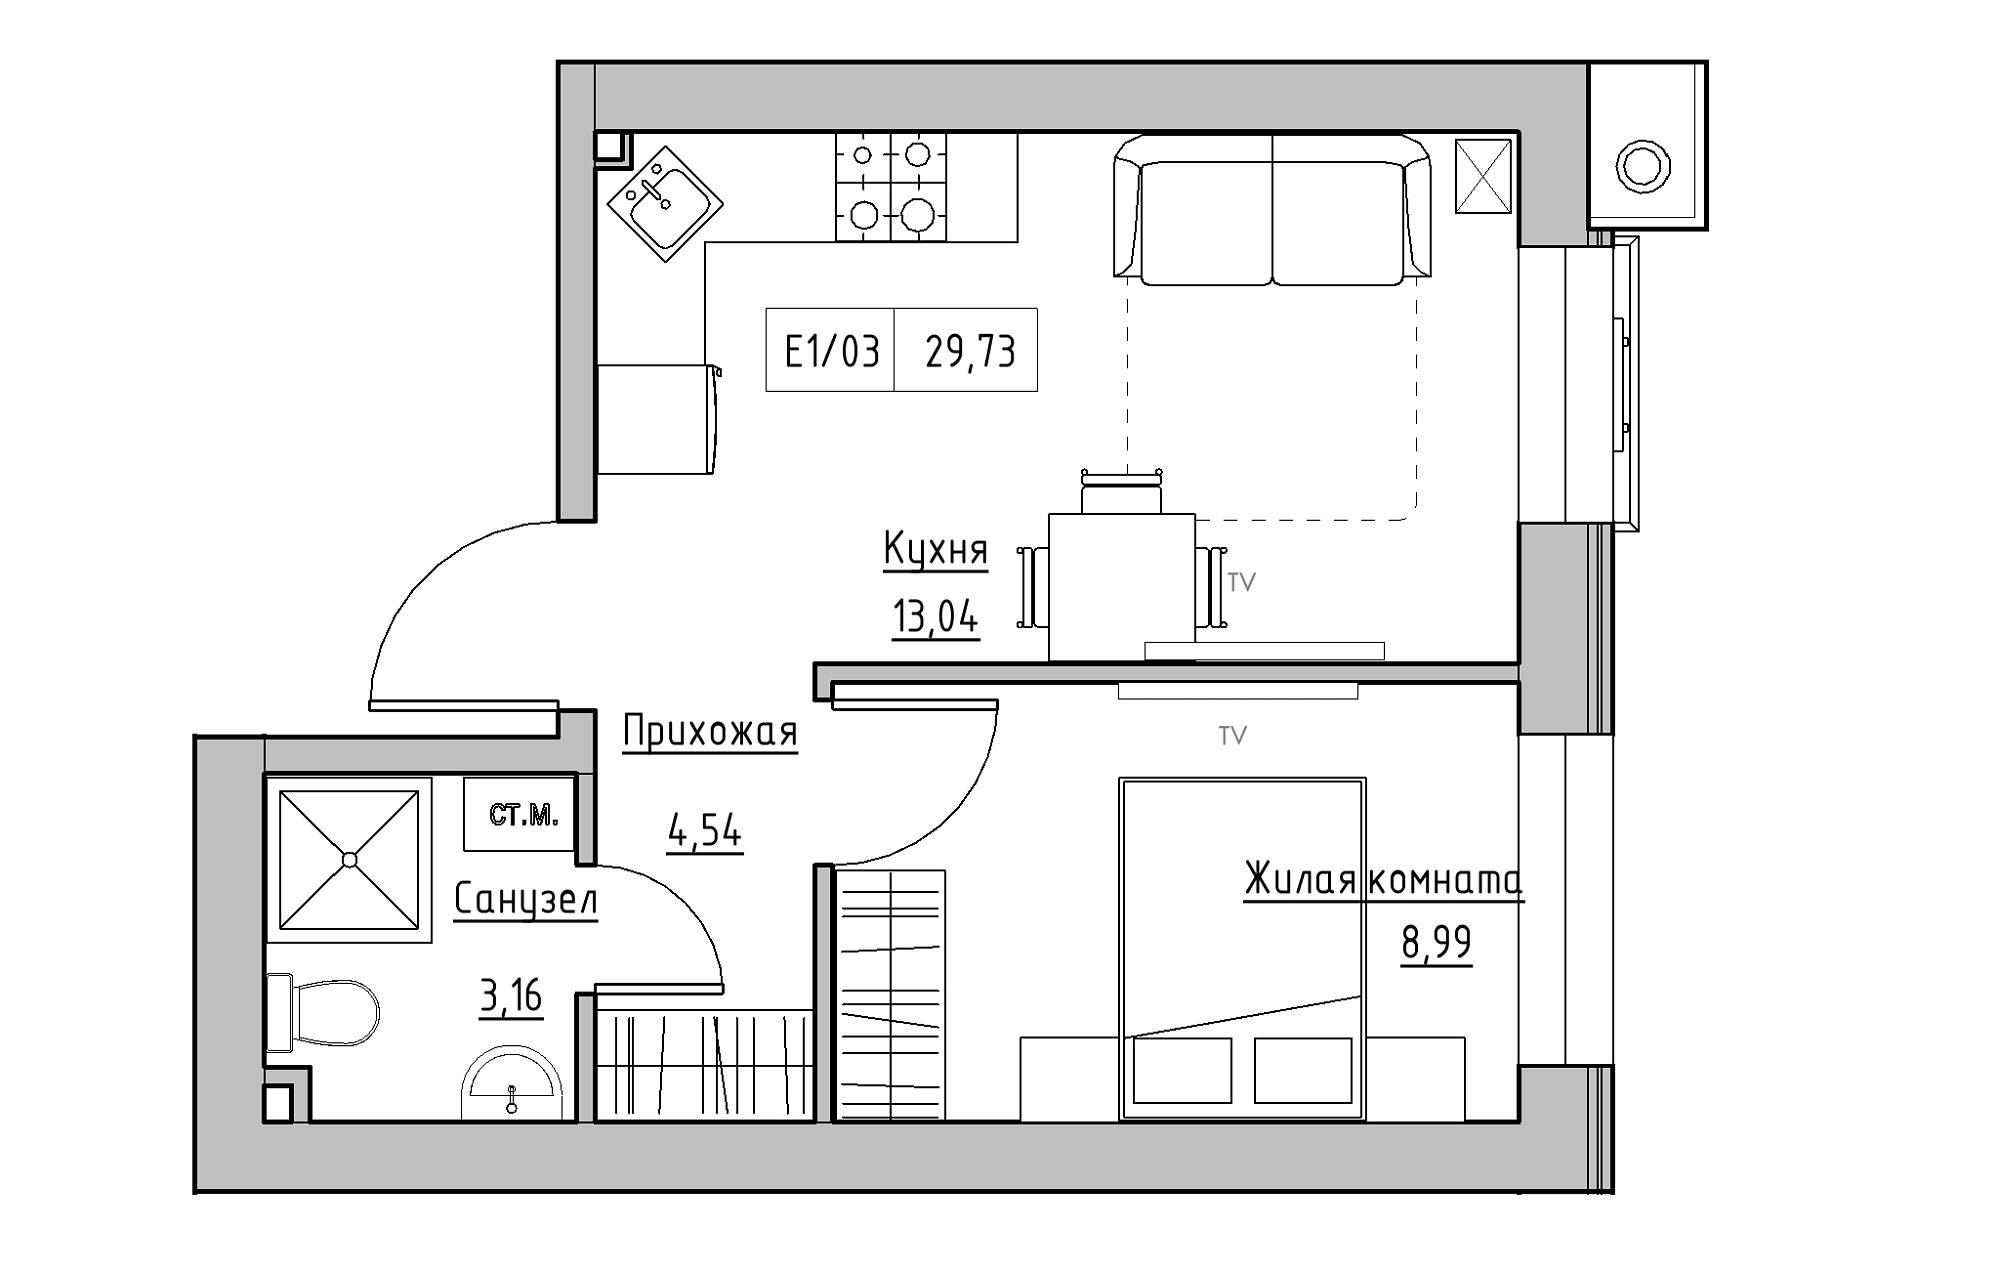 Планування 1-к квартира площею 29.73м2, KS-013-01/0002.